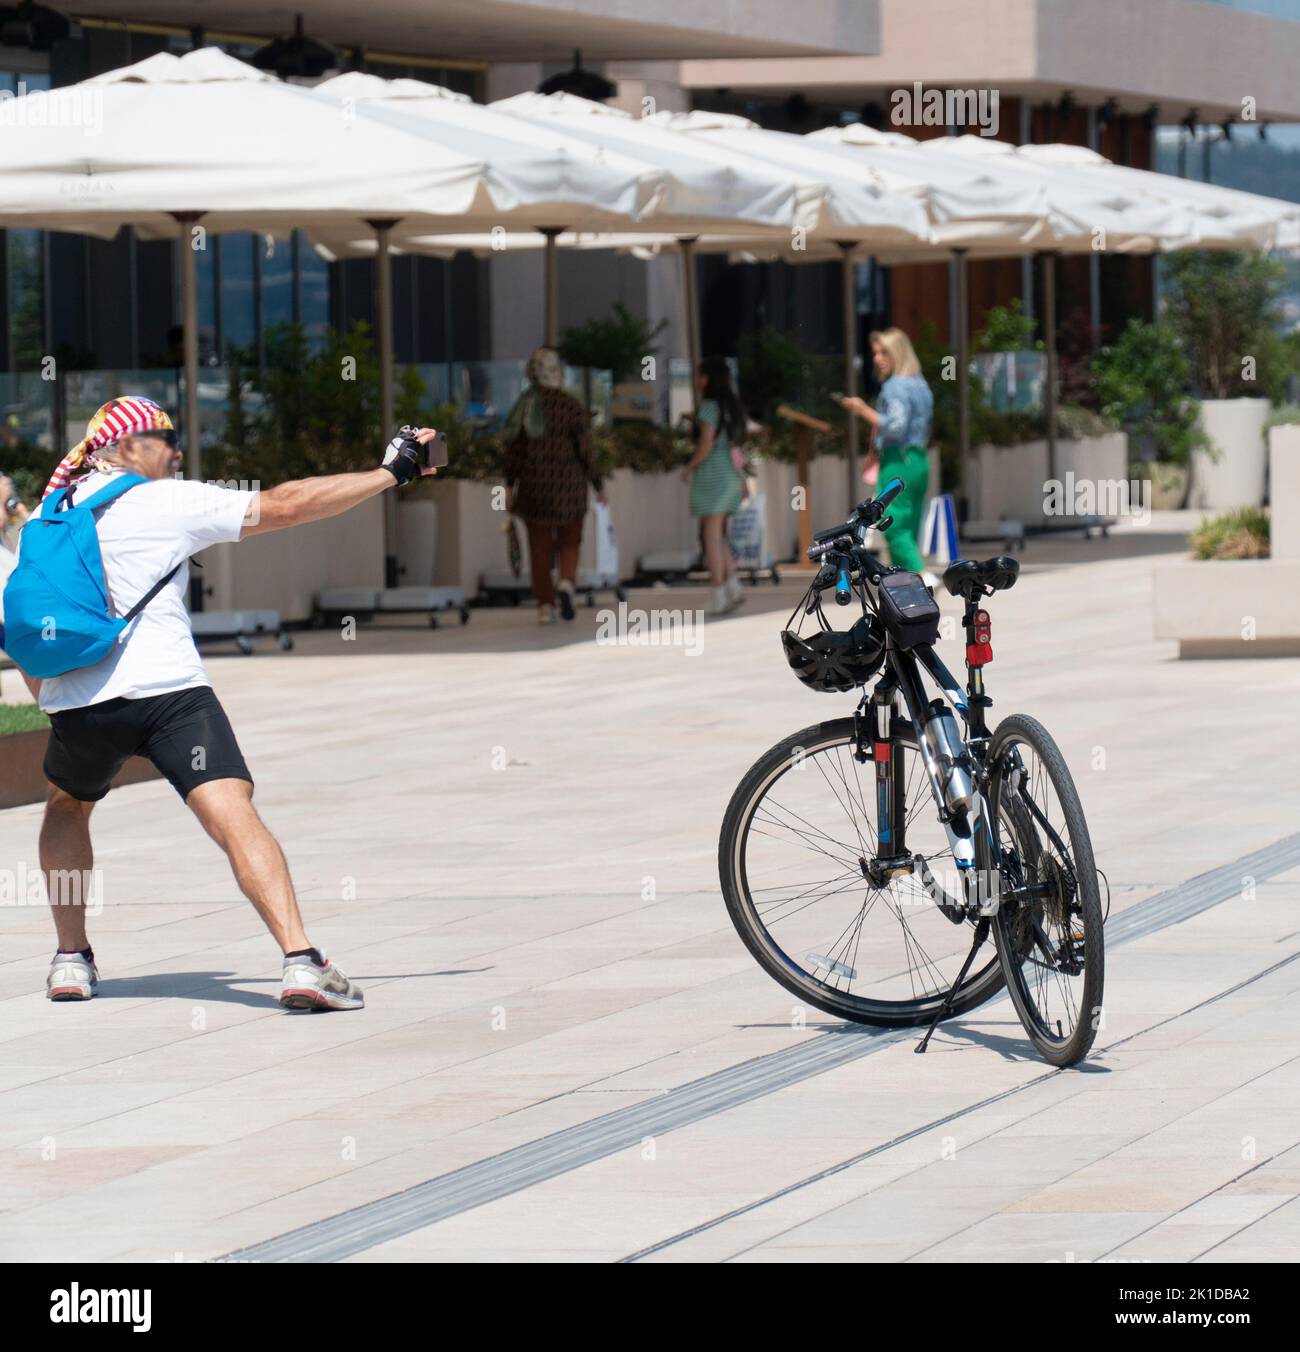 Ein sportlicher älterer Mann - Radfahrer, der Selfie-Fotos mit dem Smartphone macht, während einer Radtour allein auf Sommerurlaubsreise Stockfoto